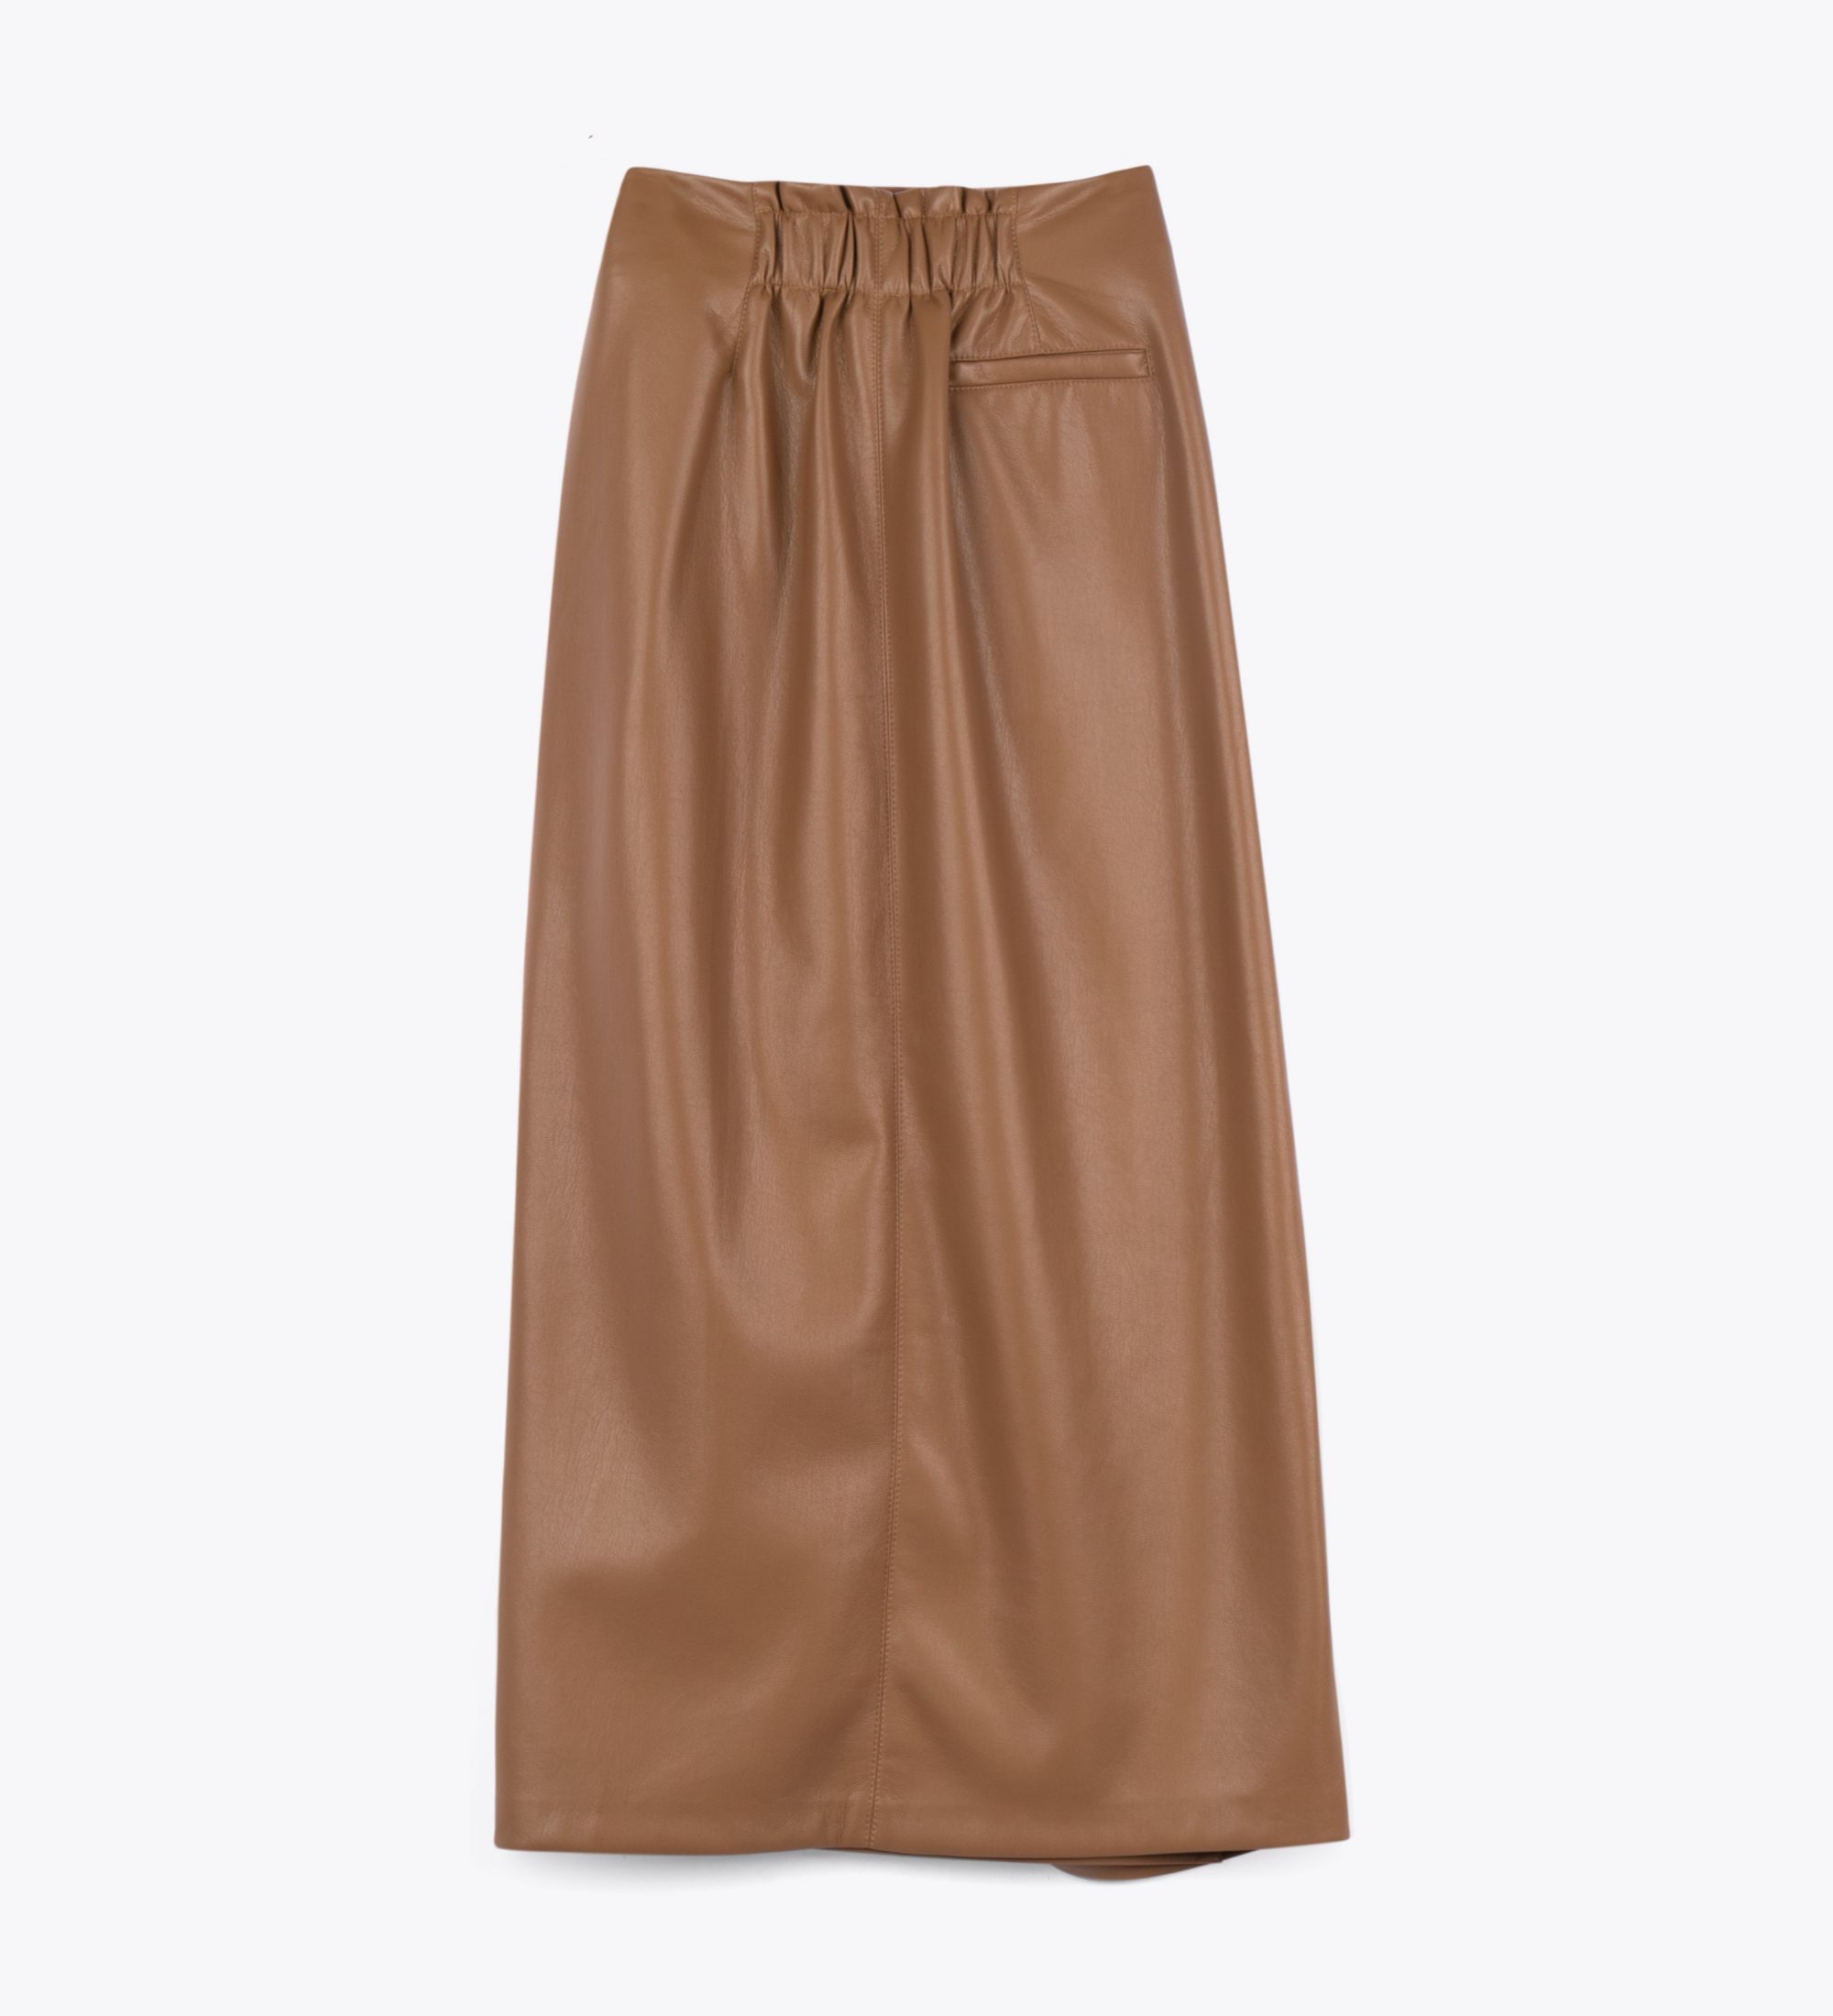 LEEZ Women Leather Skirt - Khaki